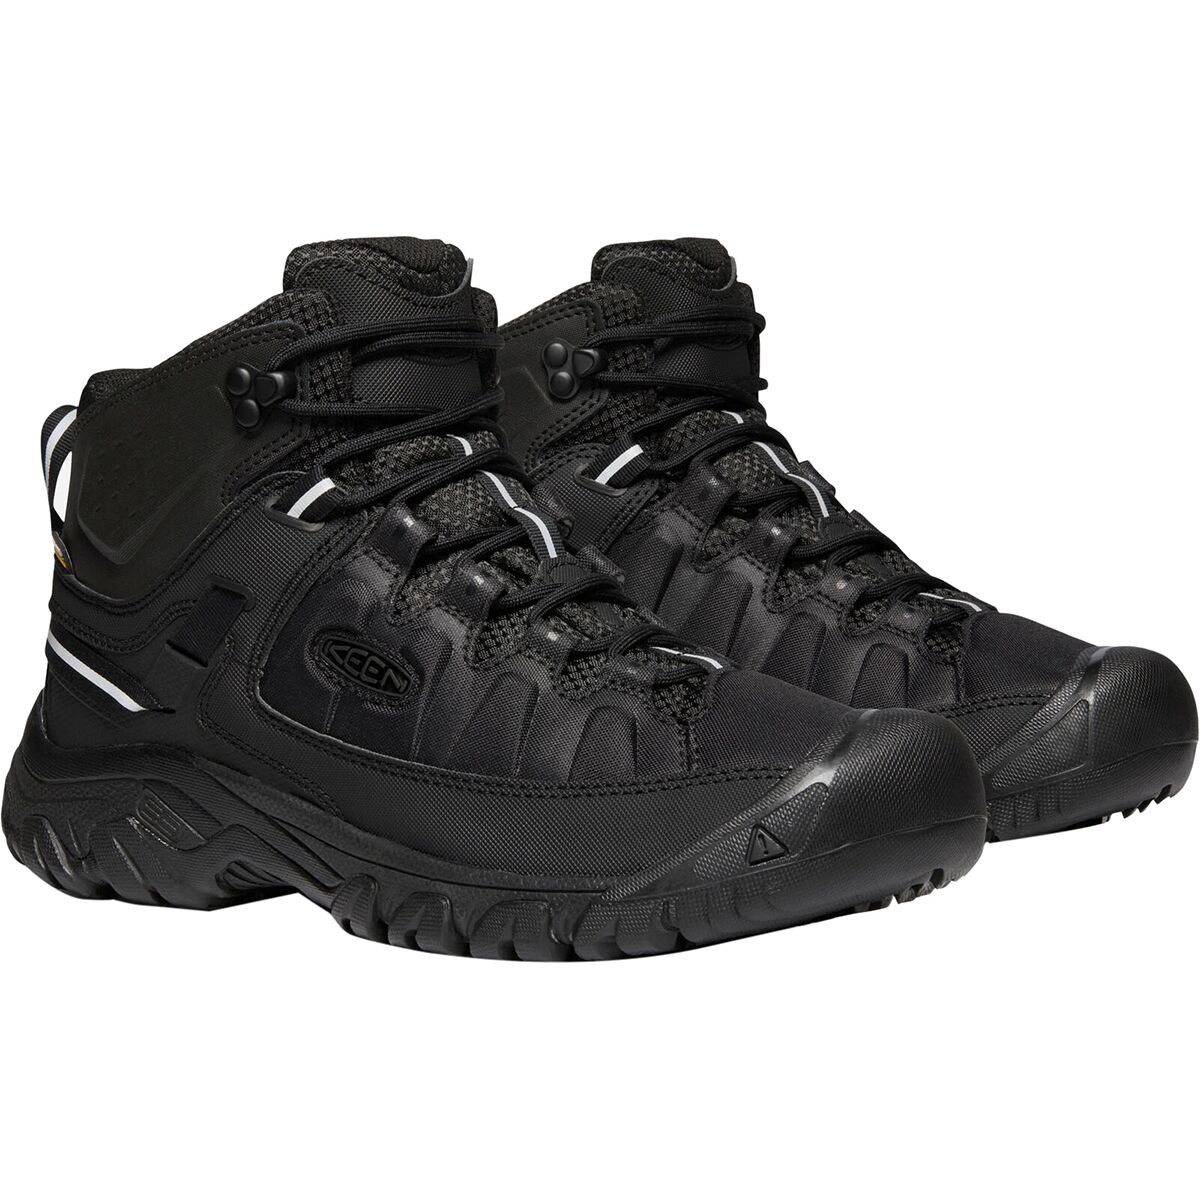 KEEN Targhee Exp Mid Waterproof Boot - Men's - Footwear